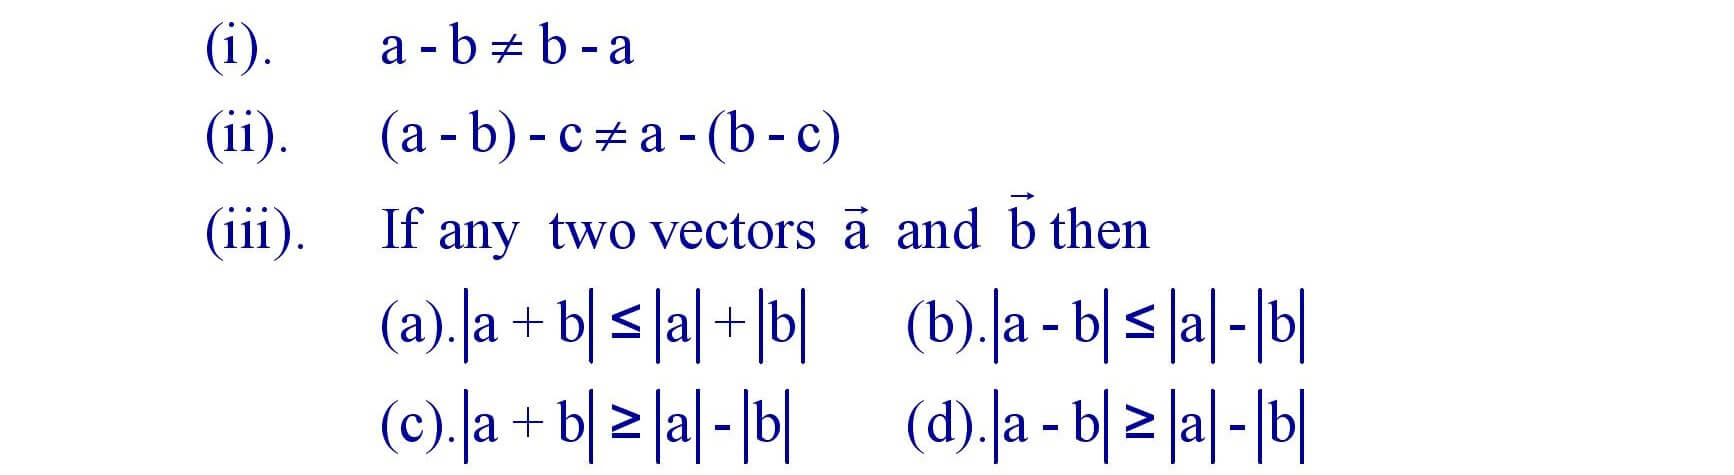 Subtraction of Vectors